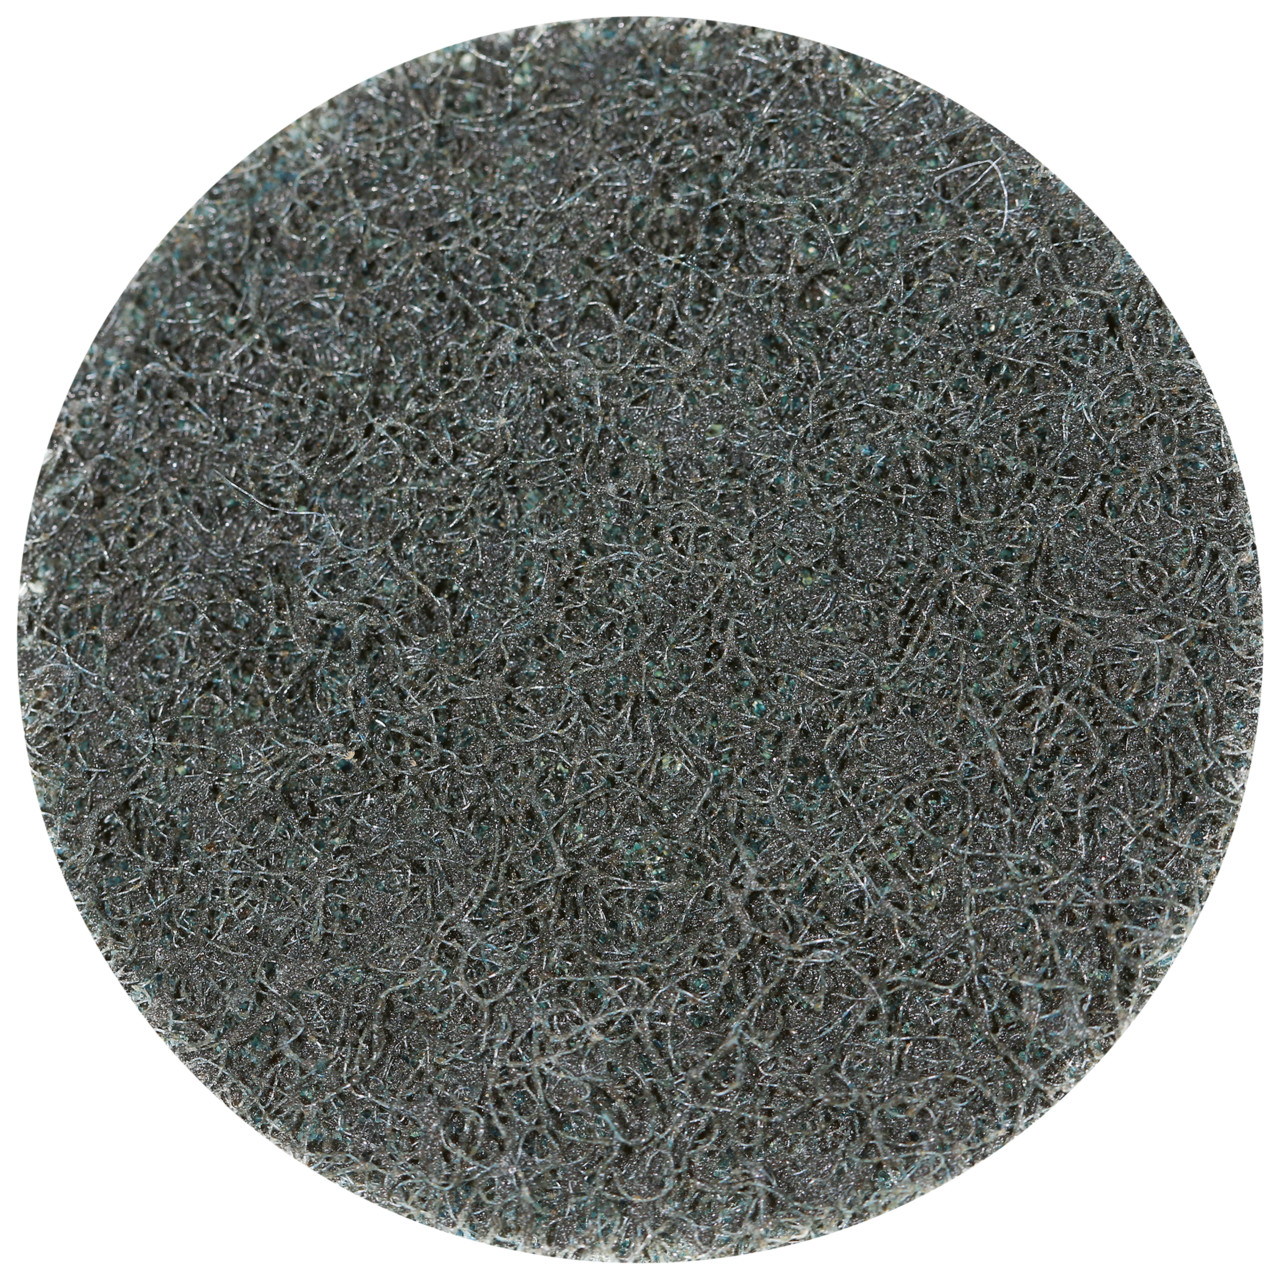 Tyrolit SCM QUICK CHANGE DISC Dimension 50xR Pour l'acier, l'acier inoxydable, les métaux non ferreux, le plastique et le bois, GROB, Forme : QDISC, art. 112543